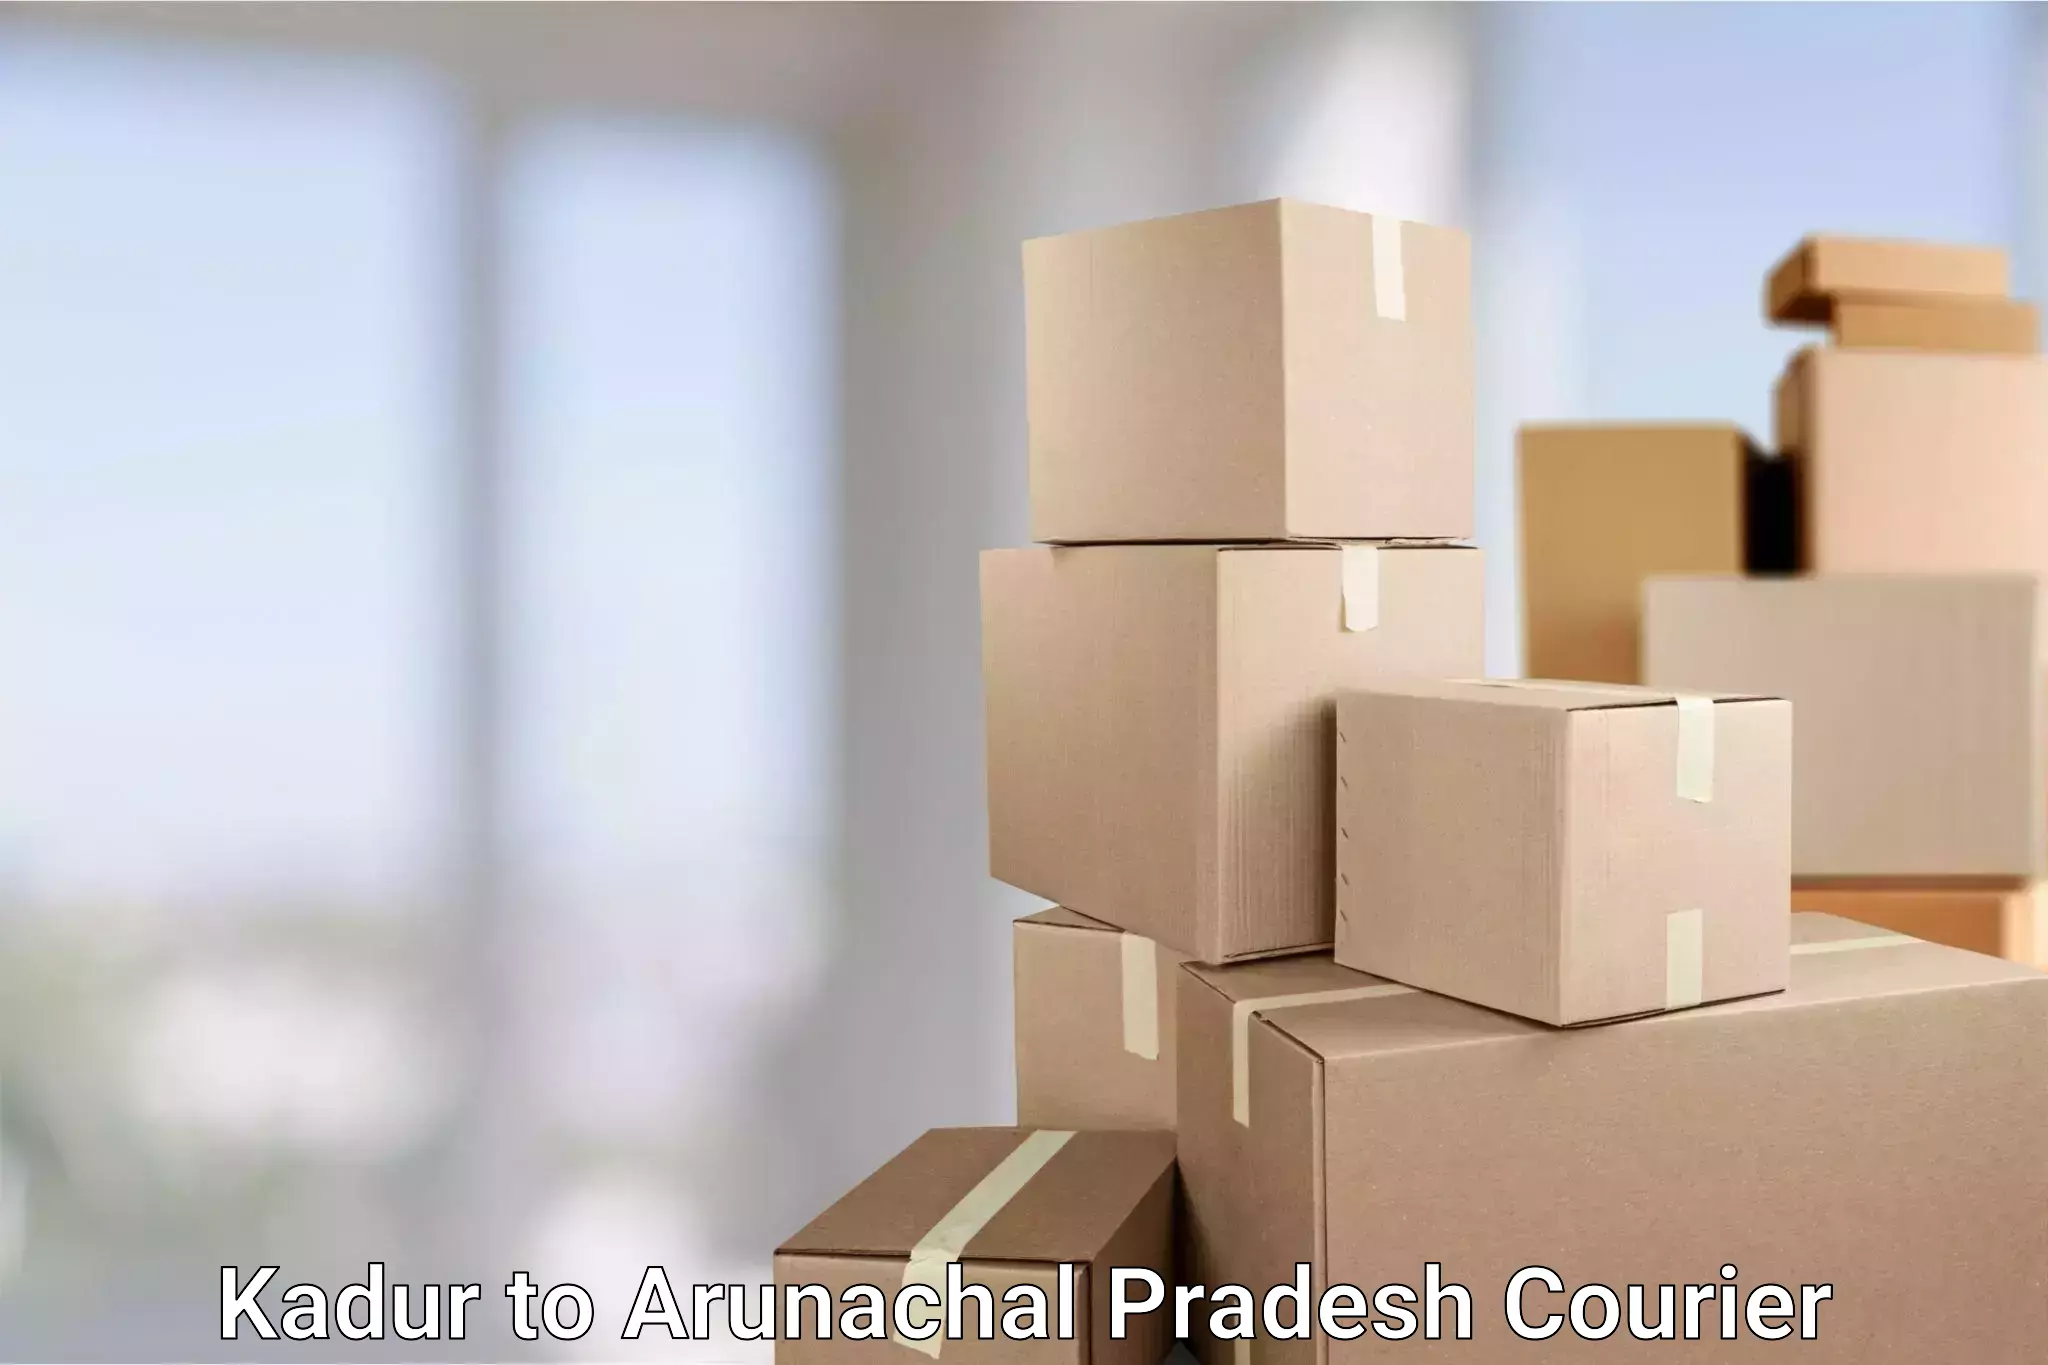 Efficient parcel transport Kadur to Arunachal Pradesh